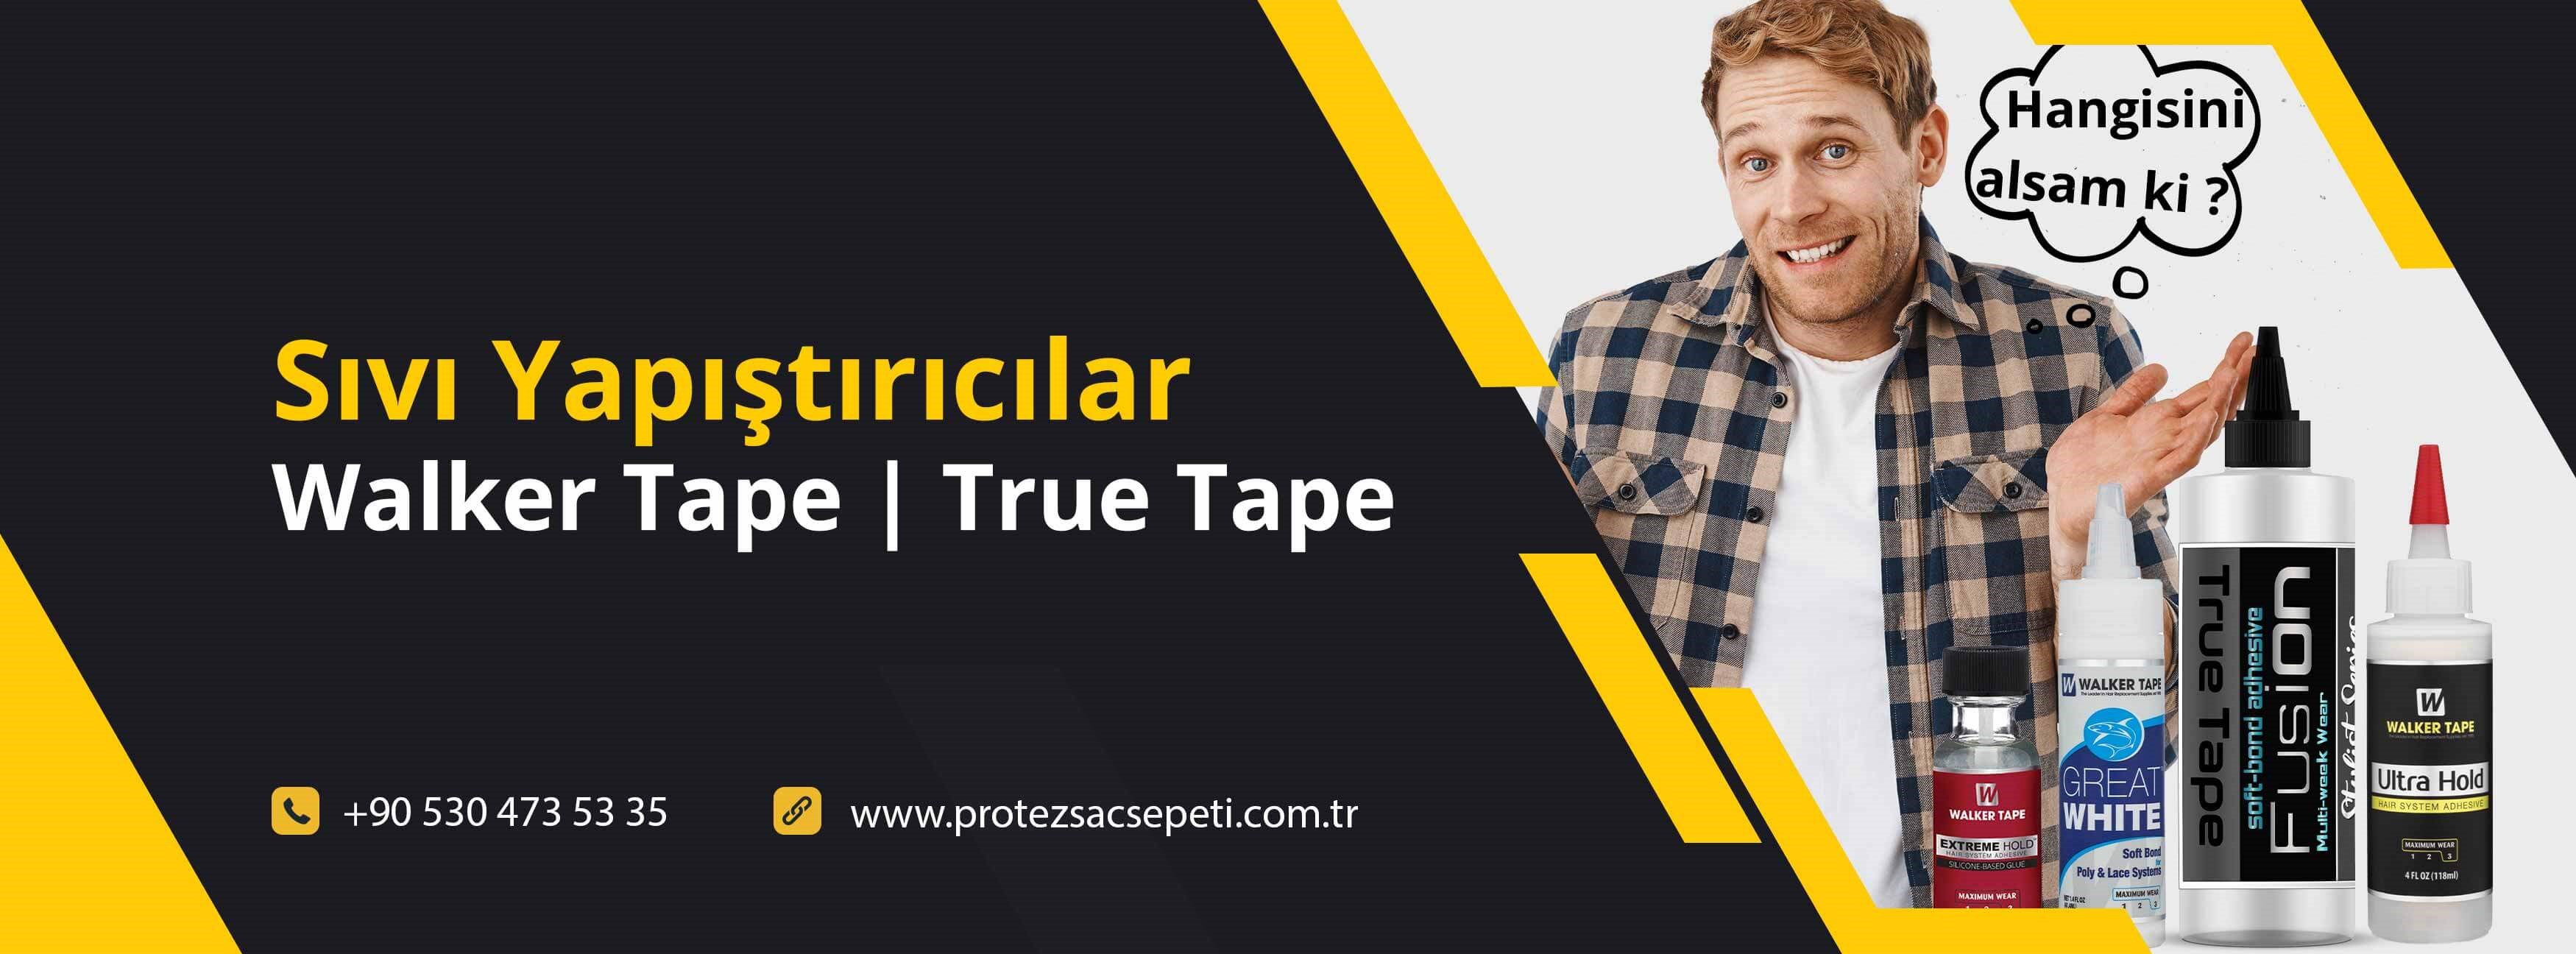 Walker Tape | TrueTape | Protez Saç Sıvı Yapıştırıcılar